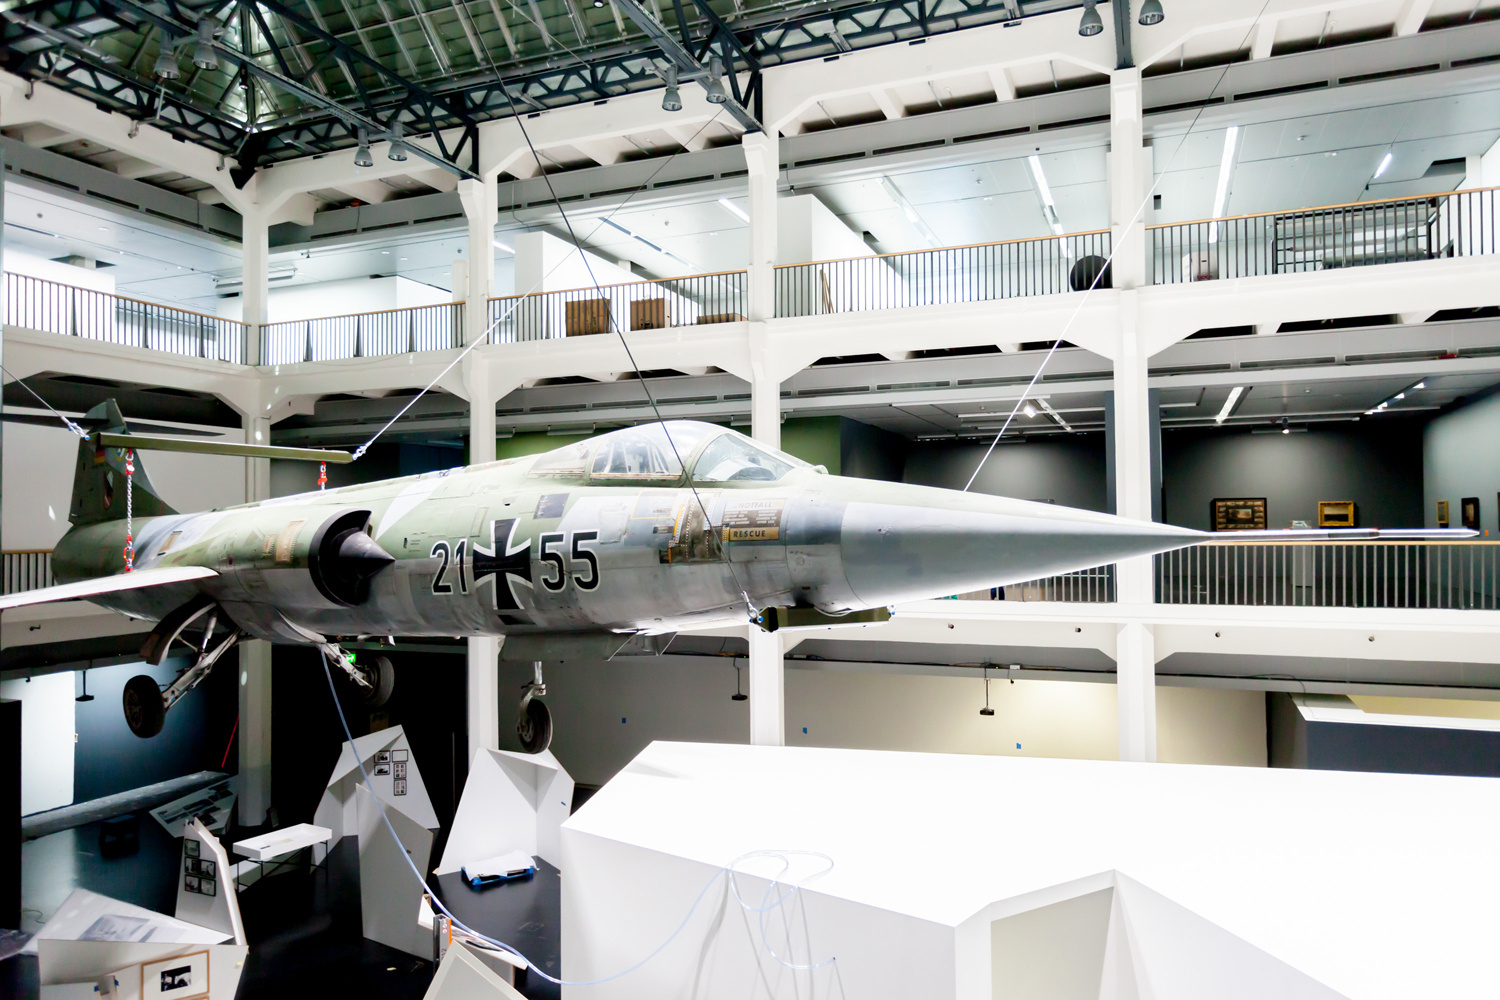 Ein Starfighter, der im Museumsraum von der Decke hängt